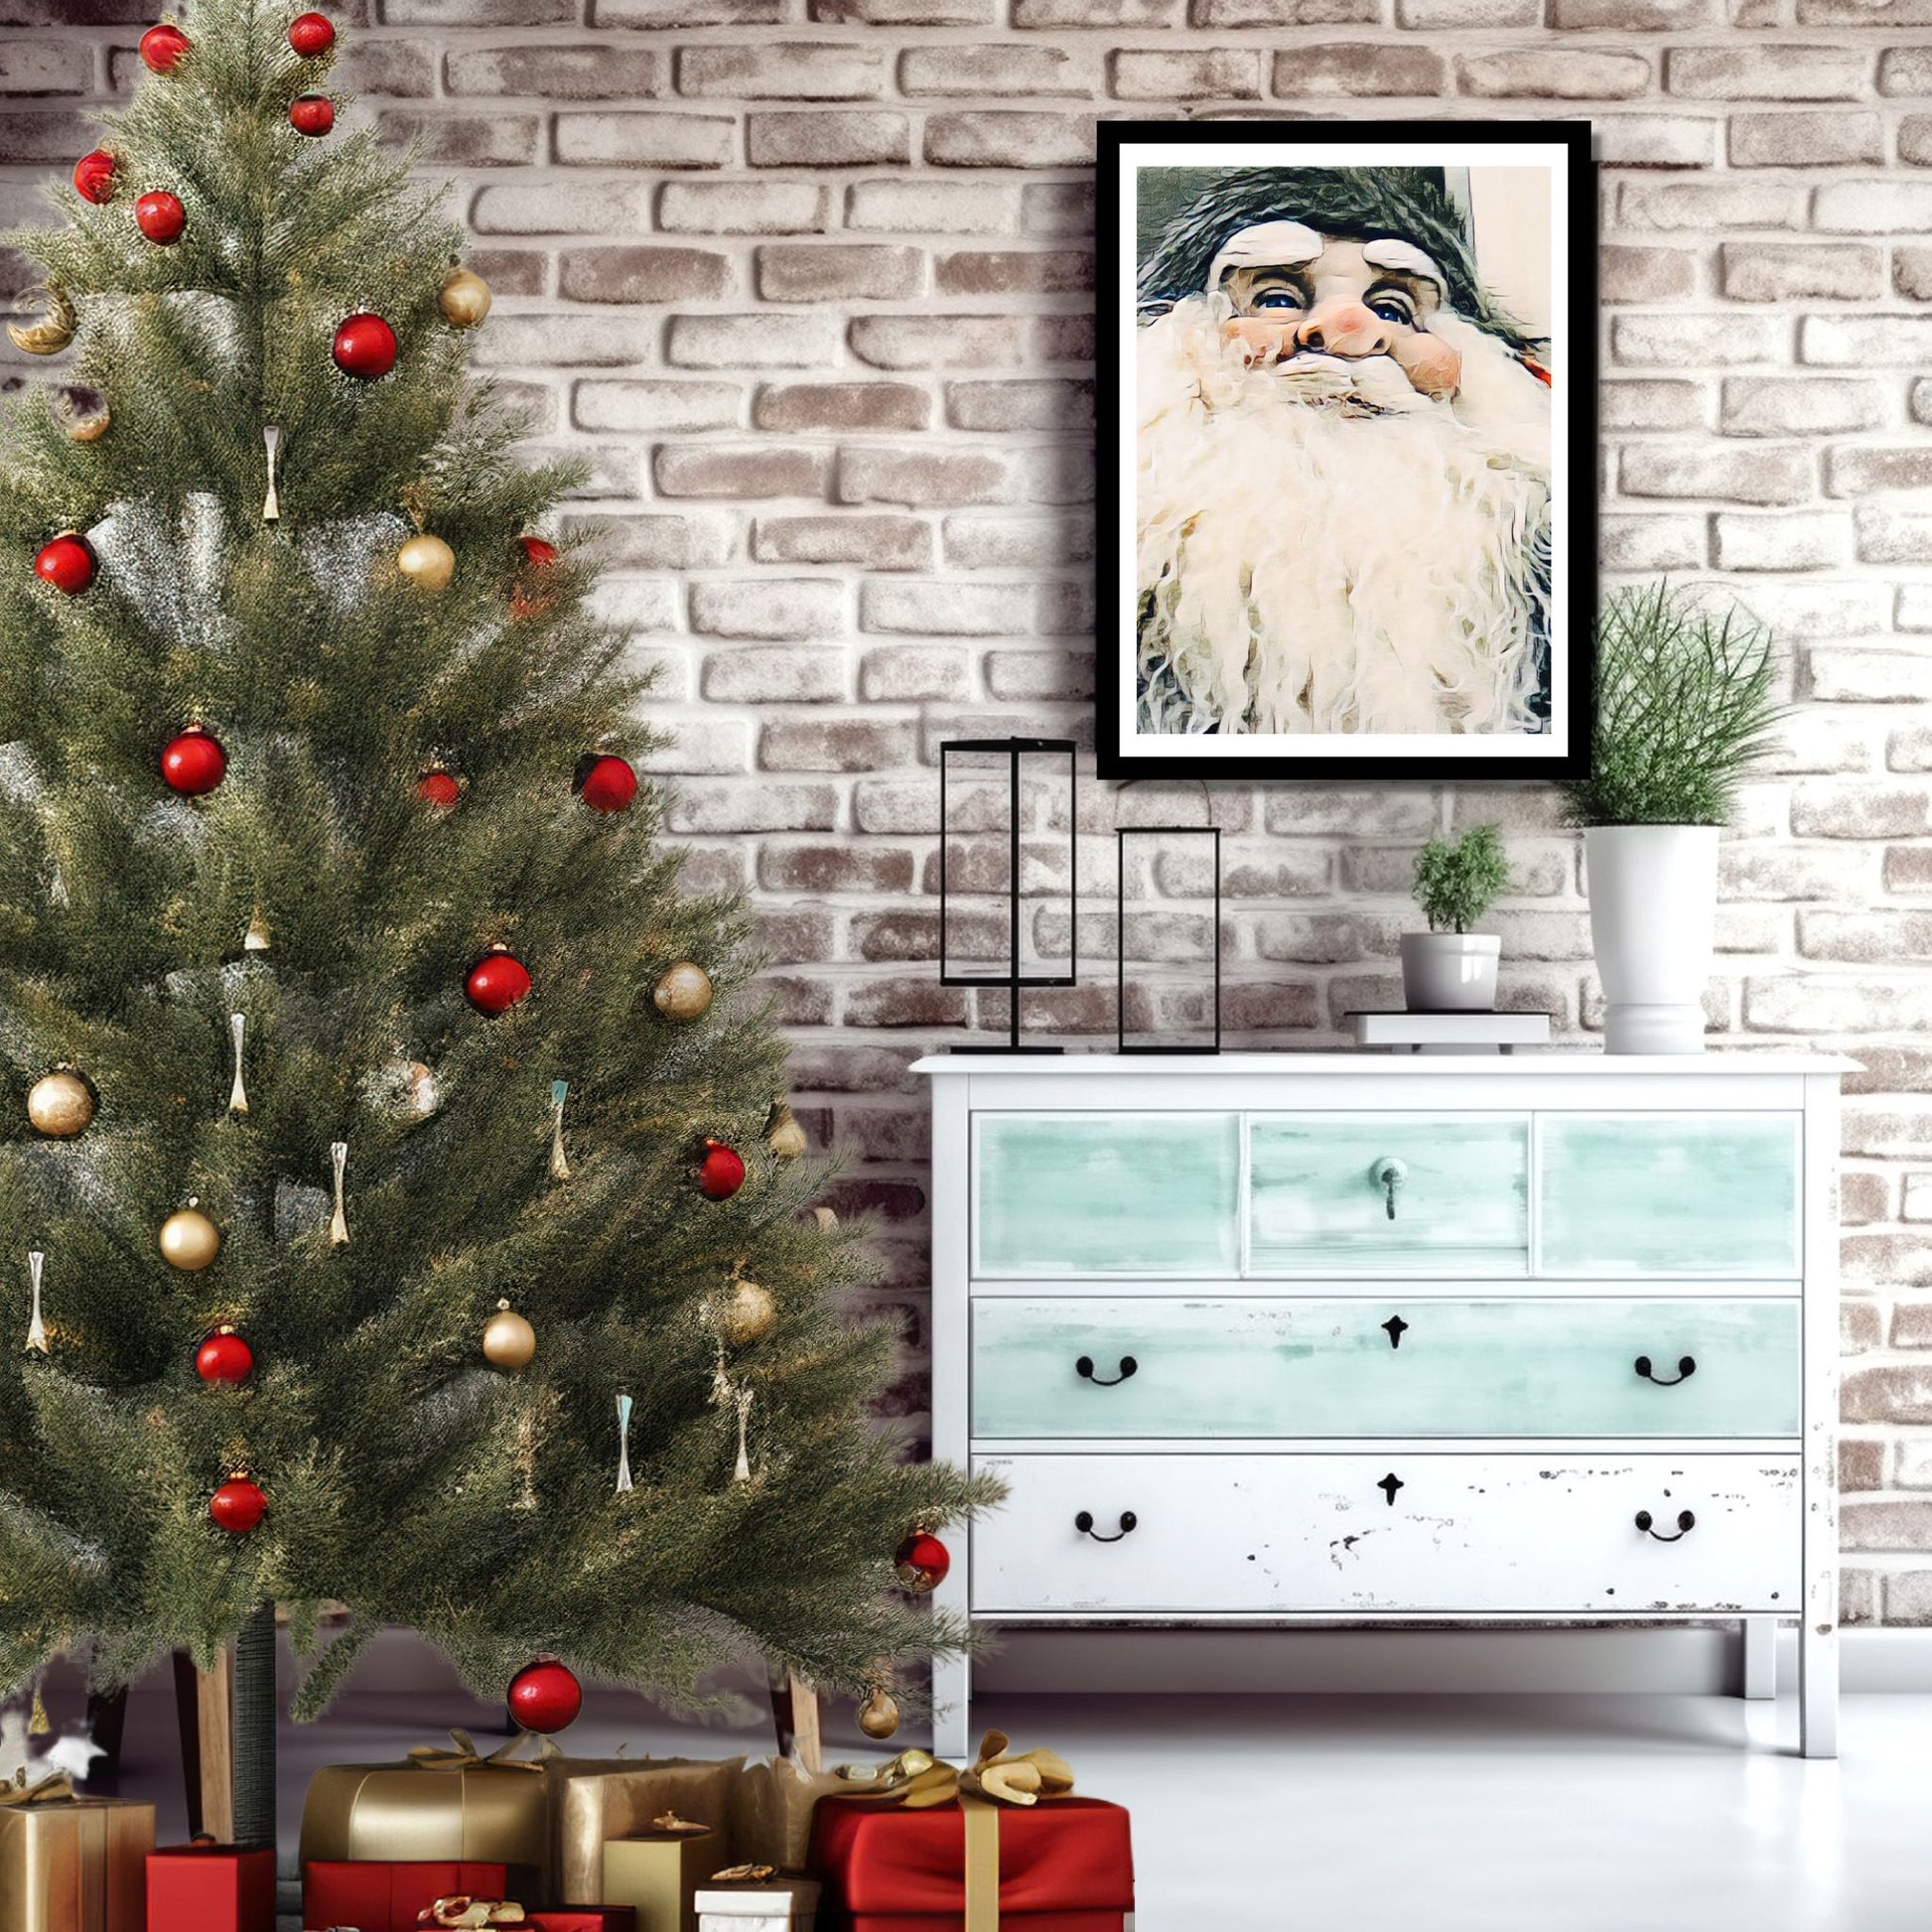 Grafisk motiv av ansiktet til en julenisse med stort, hvitt skjegg. På bildet henger nissemotivet som plakat i en sort ramme på en murvegg. Under bildet står det en grønn kommode, og ved siden av et juletre og julepakker.